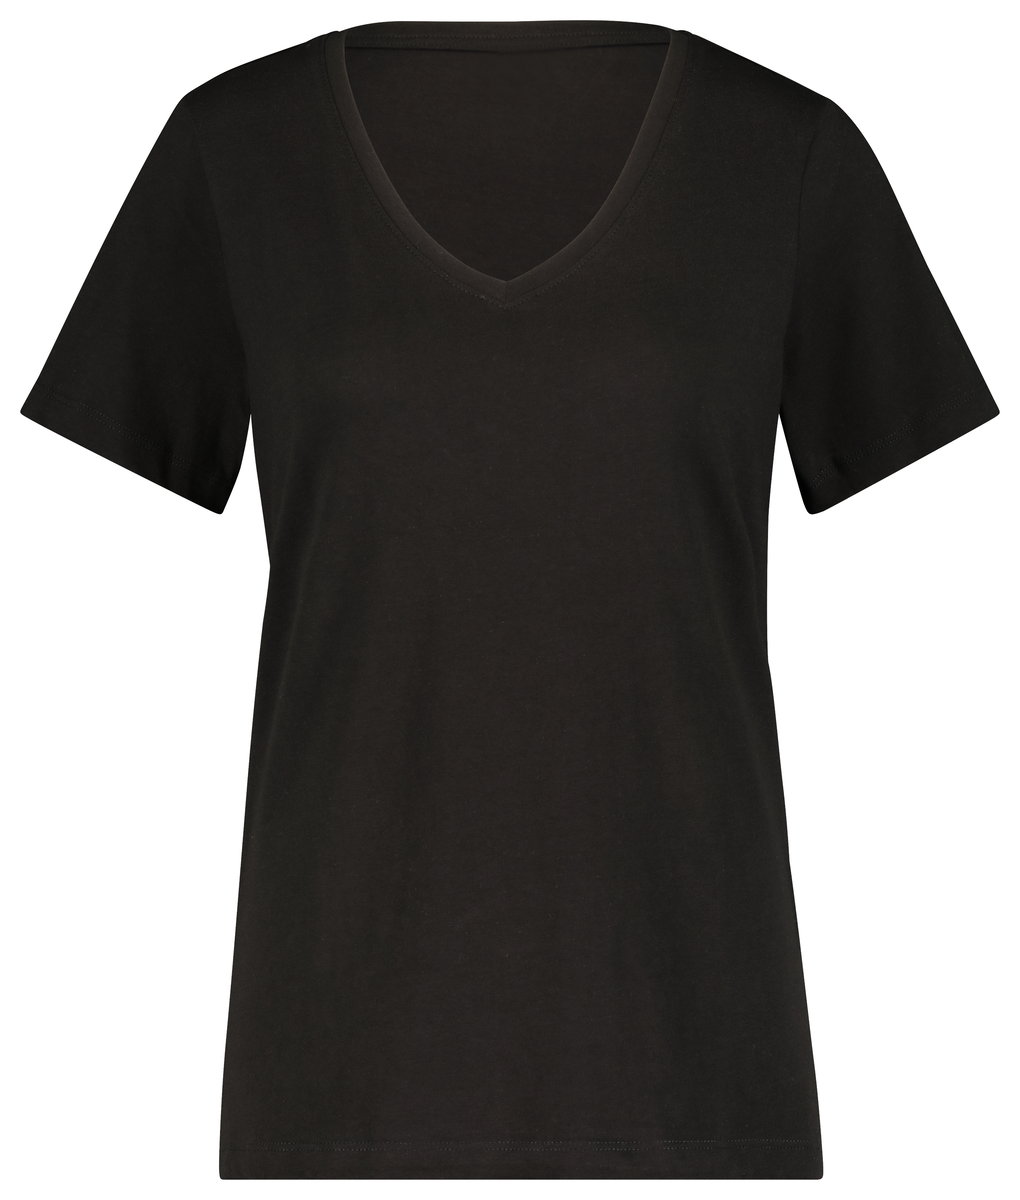 Damen-T-Shirt mit Bambus schwarz schwarz - 1000027537 - HEMA